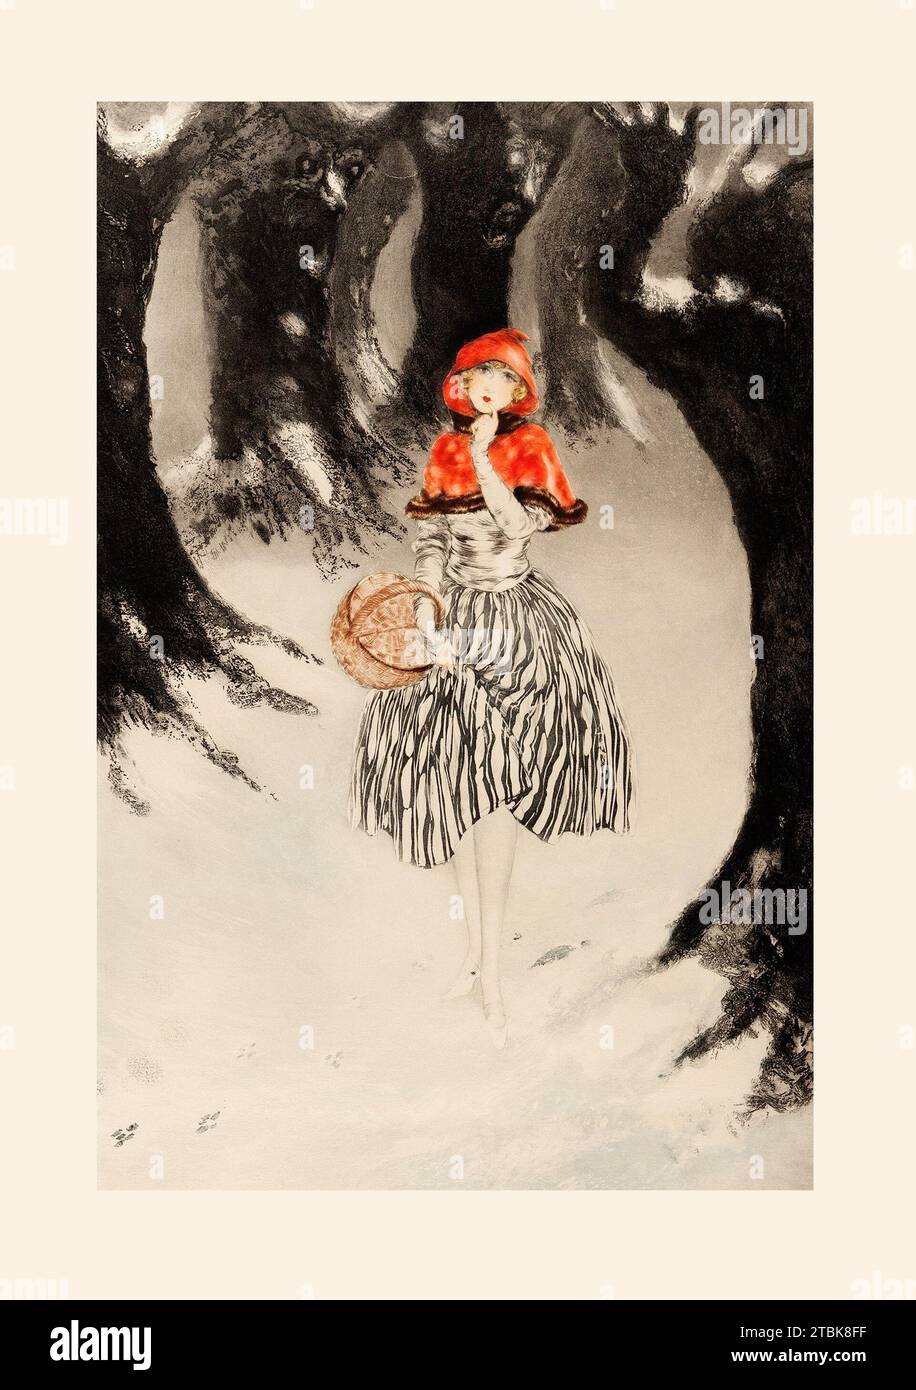 'Red Riding Hood se fraie un chemin à travers une forêt sombre et ombrelle jusqu'à la maison de grand-mère, dans cette gravure de couleur de l'artiste Art Déco français Louis Icart, 1927' Banque D'Images